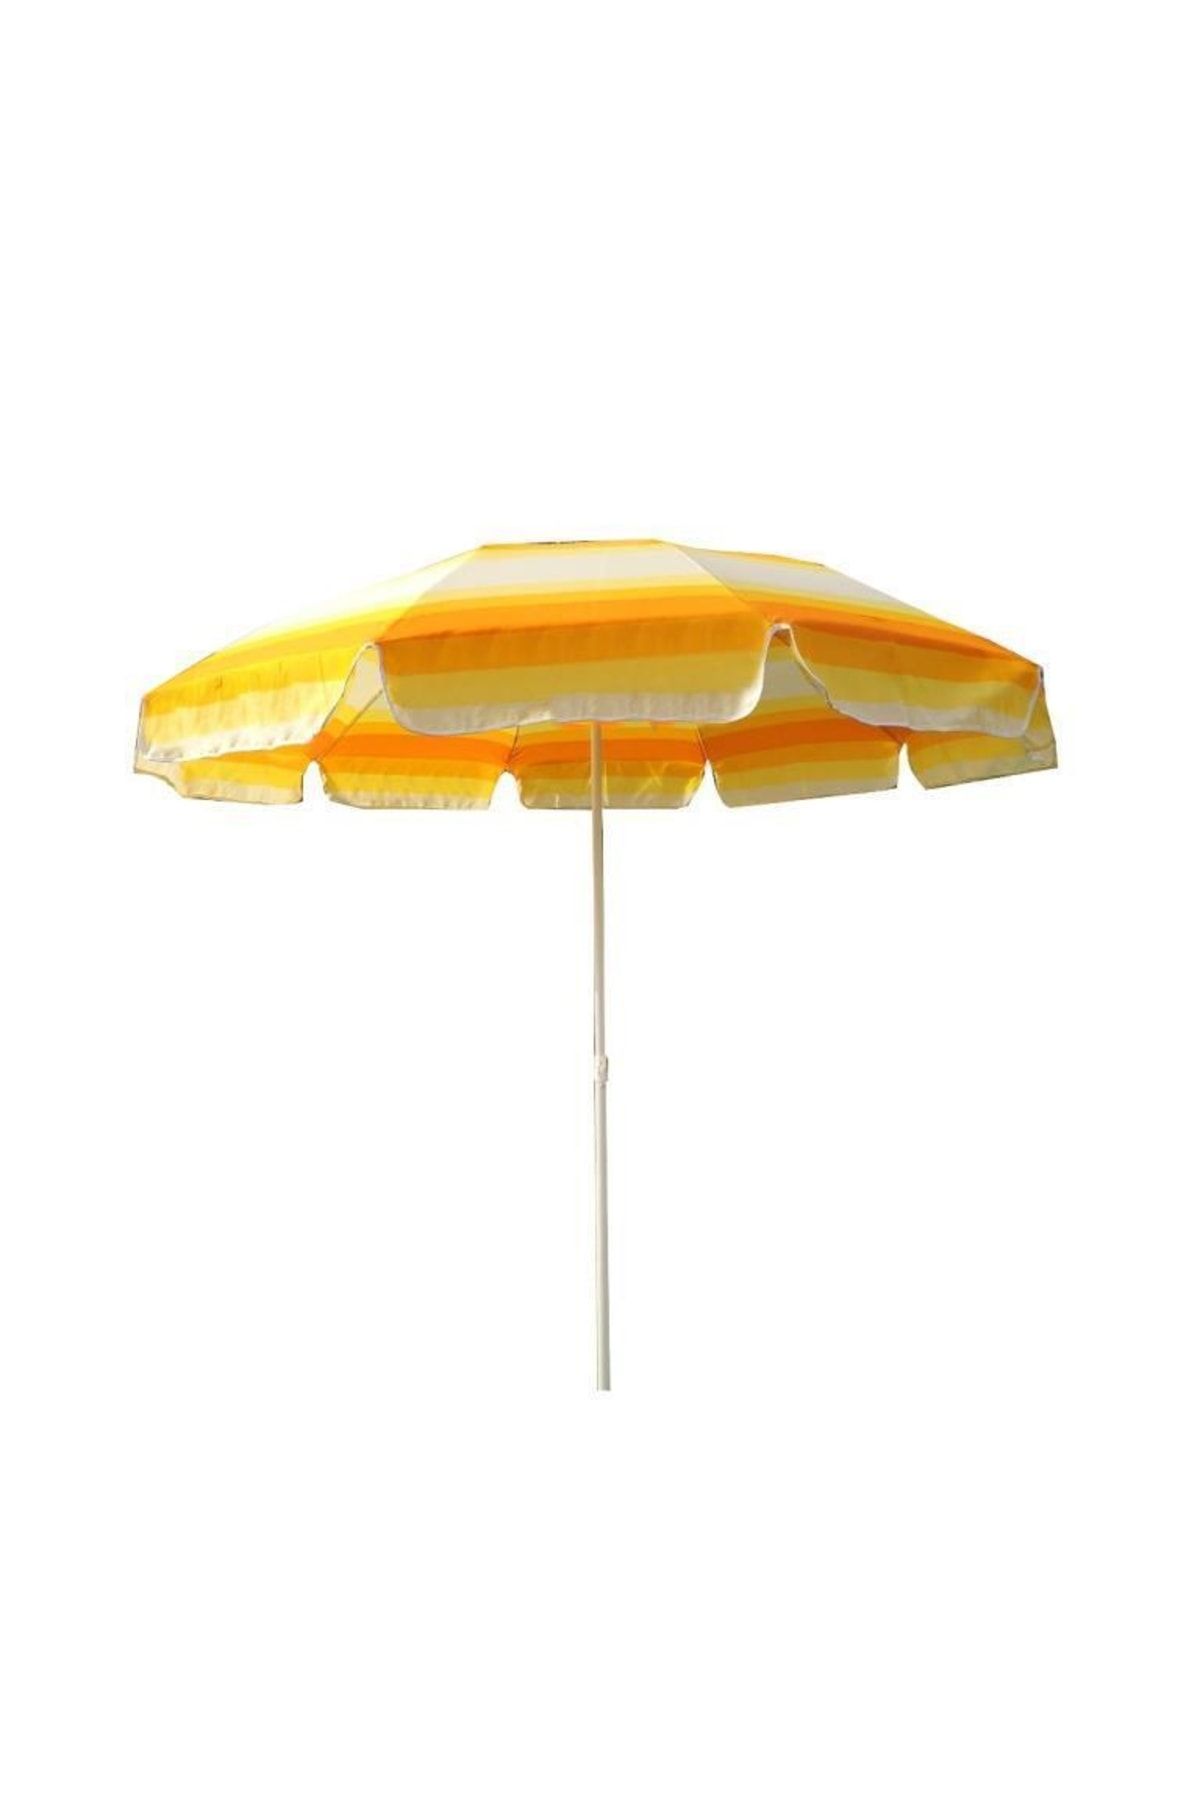 SUME Yüksek Kalite 10 Telli Plaj Şemsiyesi Eğilebilir Bahçe Şemsiyesi